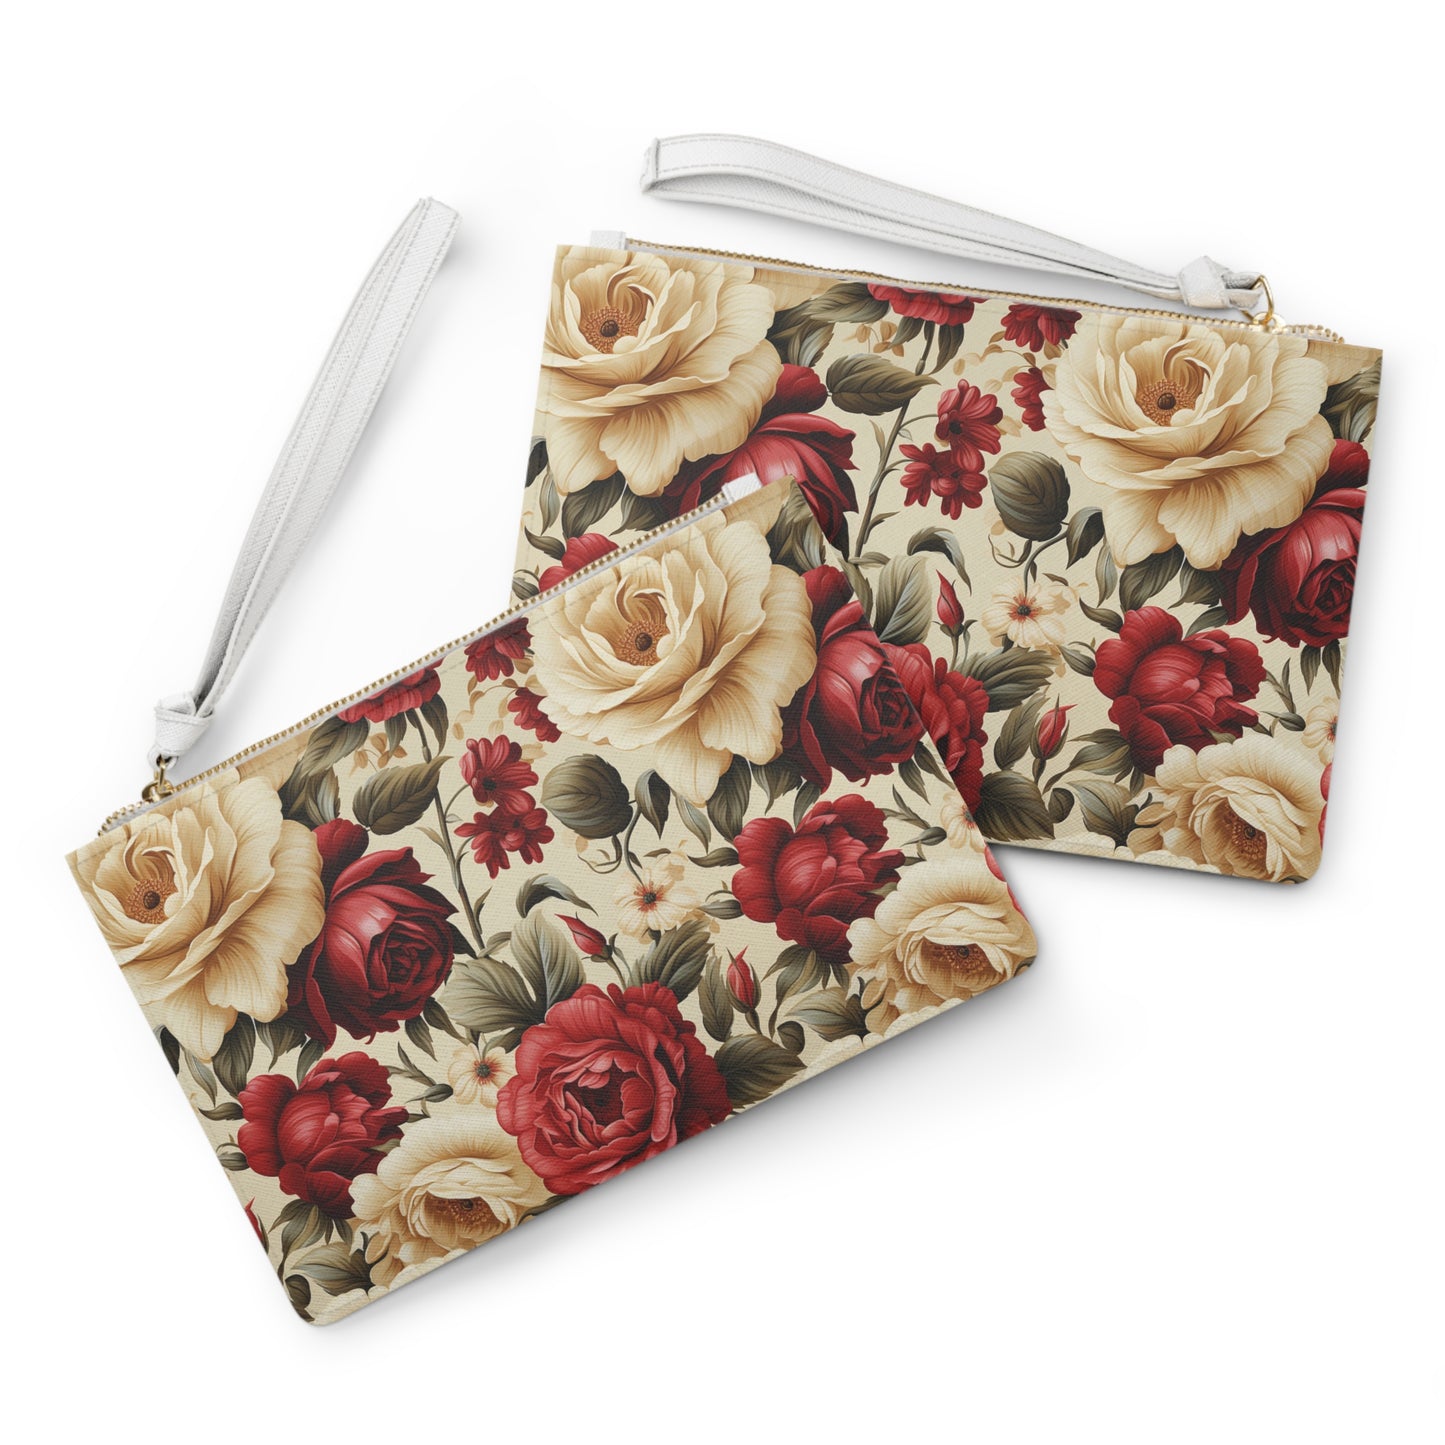 Vintage Style Rose Clutch Bag